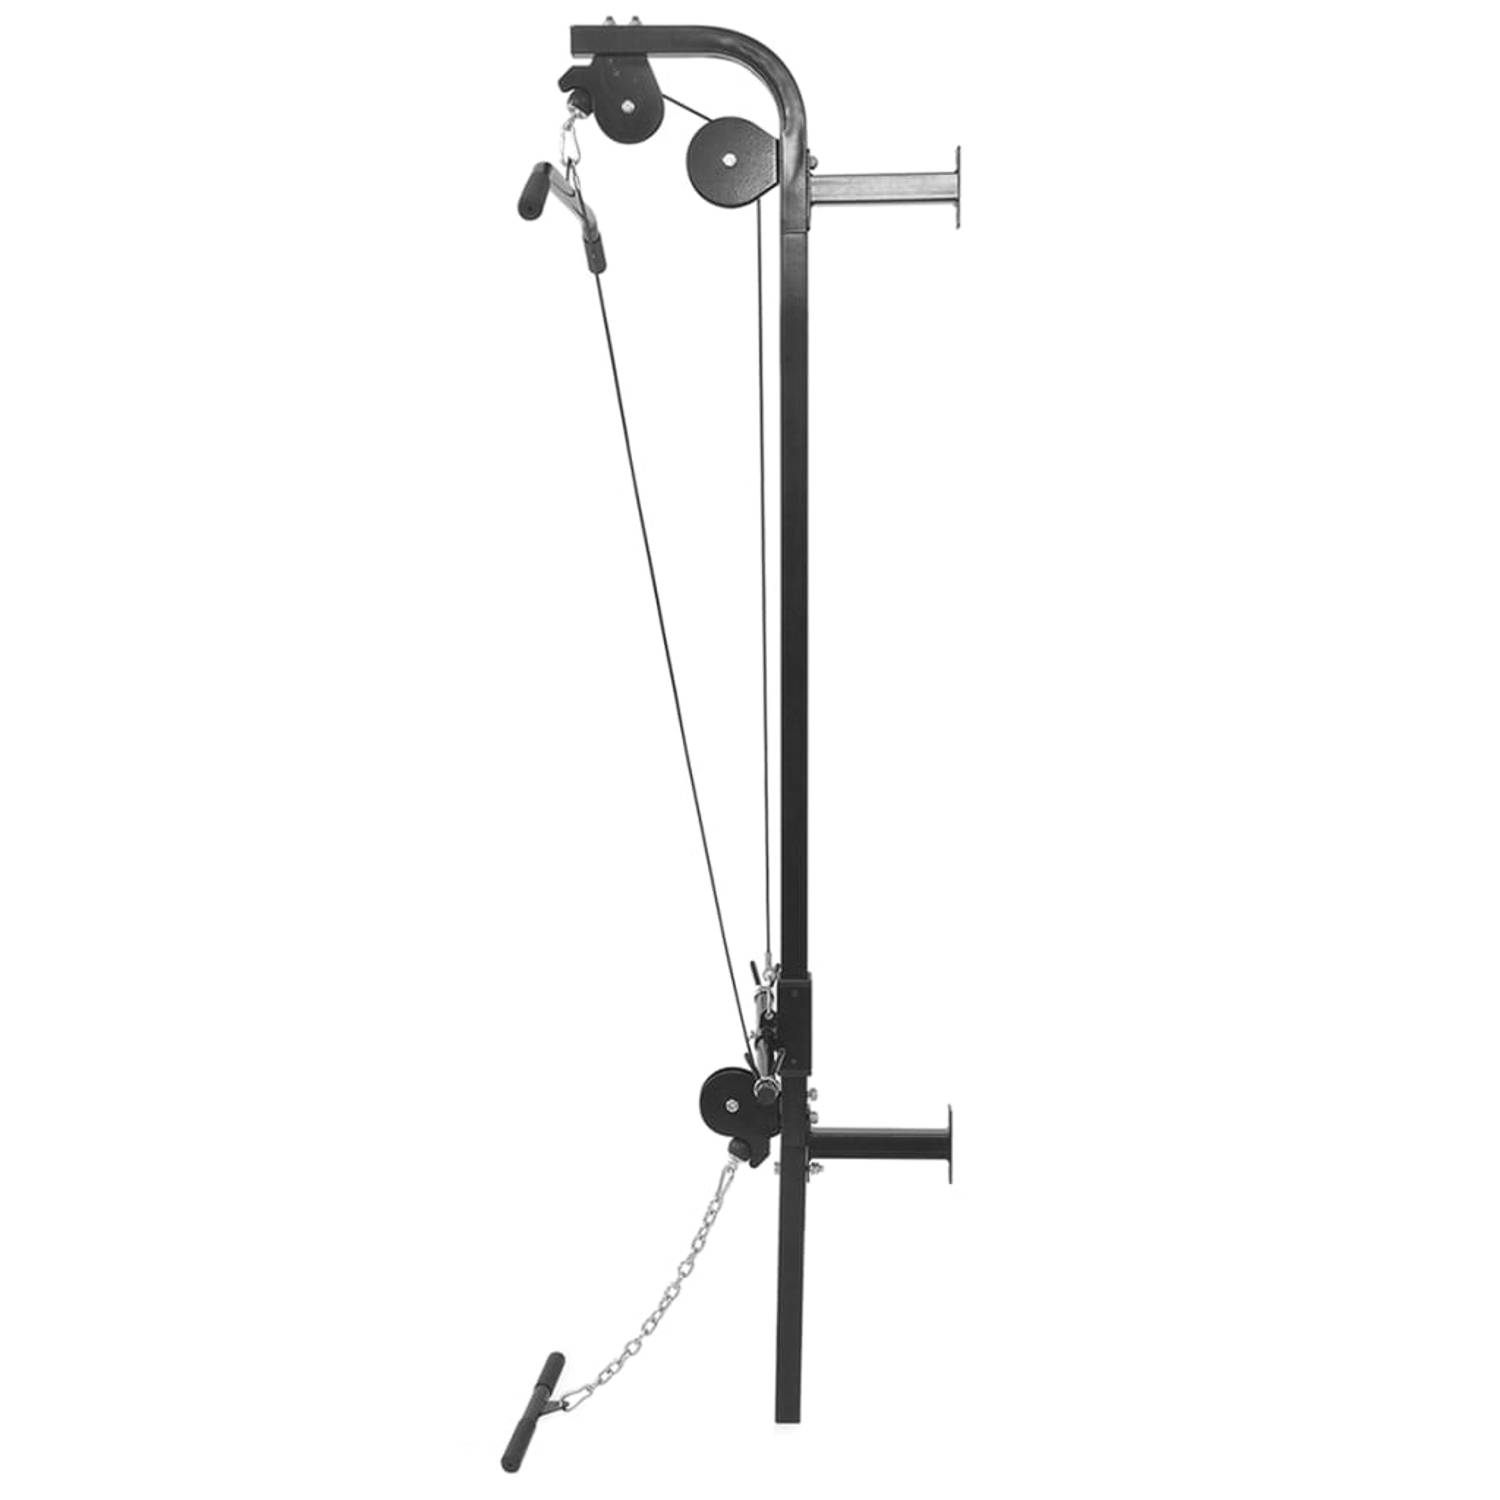 The Living Store Krachttoren - Wandgemonteerde fitnessapparaat - Lat pull-down - lage cable-pull - Staal - 99x53x194 cm - Tot 120 kg - Incl - gewichtsschijven